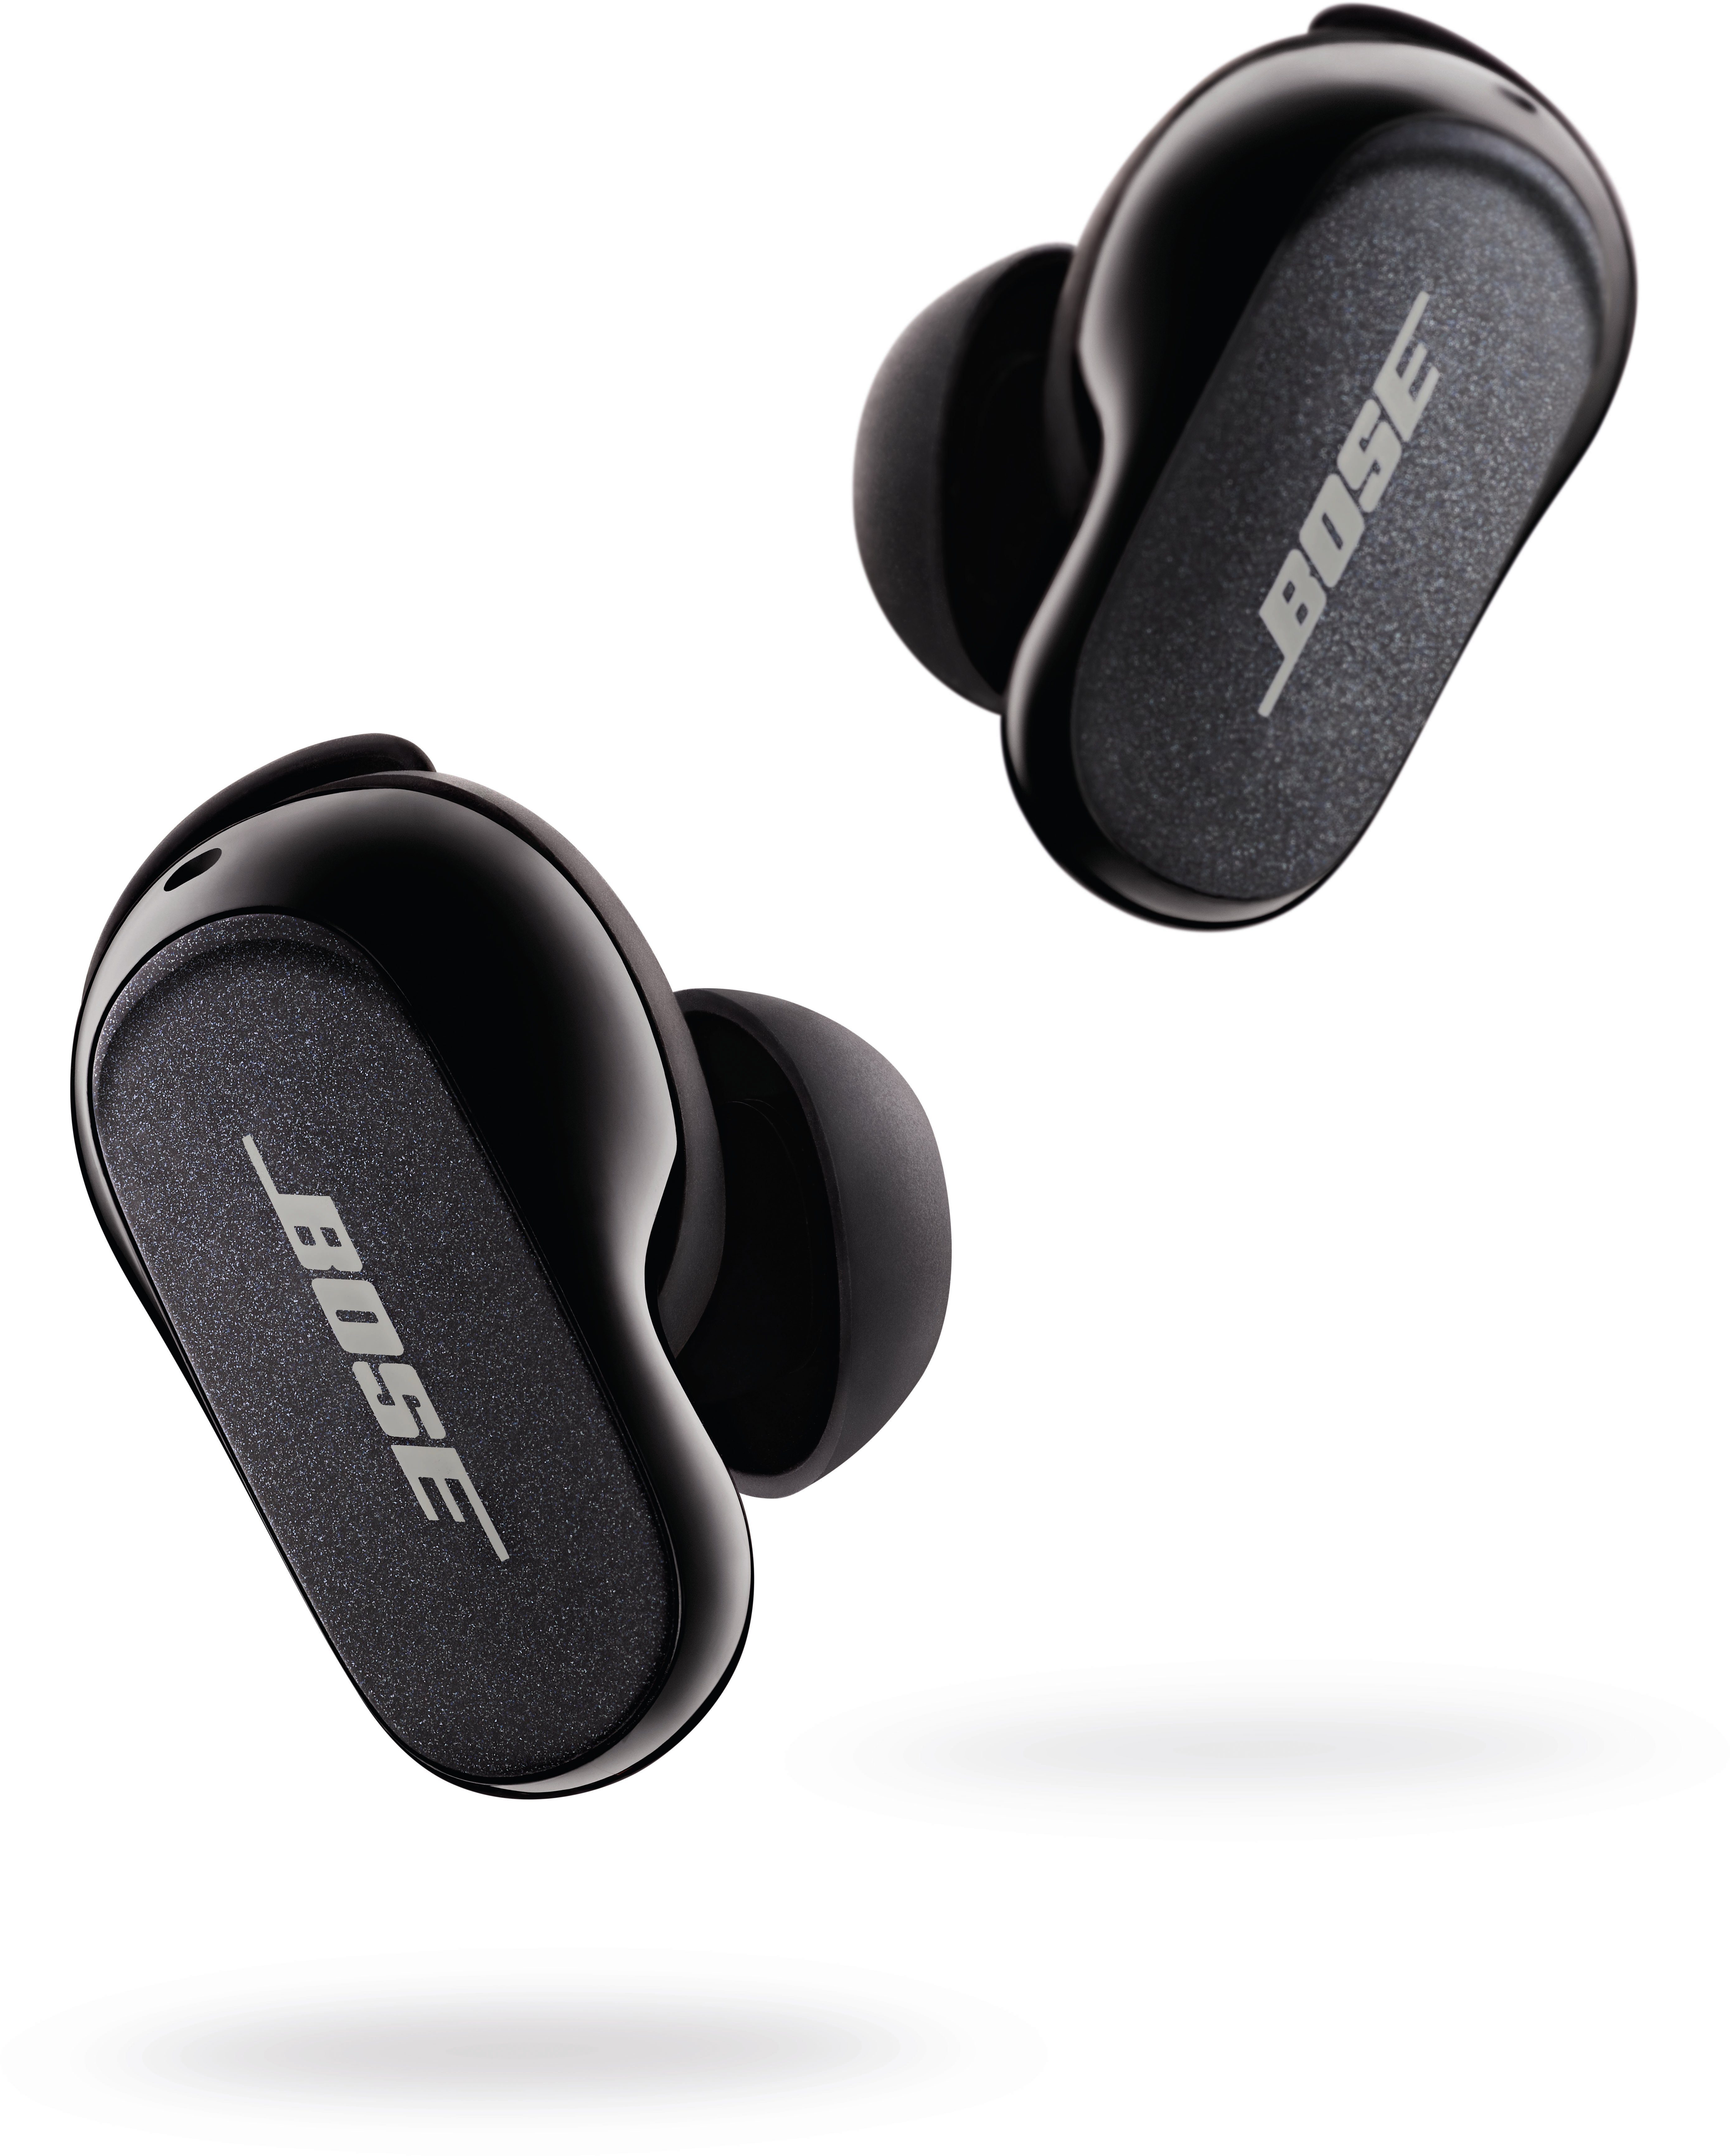 und integrierte für In-Ear-Kopfhörer (Freisprechfunktion, Musik, Lärmreduzierung wireless kabellose black Earbuds Bluetooth, QuietComfort® Anrufe personalisiertem II Noise-Cancelling, In-Ear-Kopfhörer mit Bose Klang) Steuerung